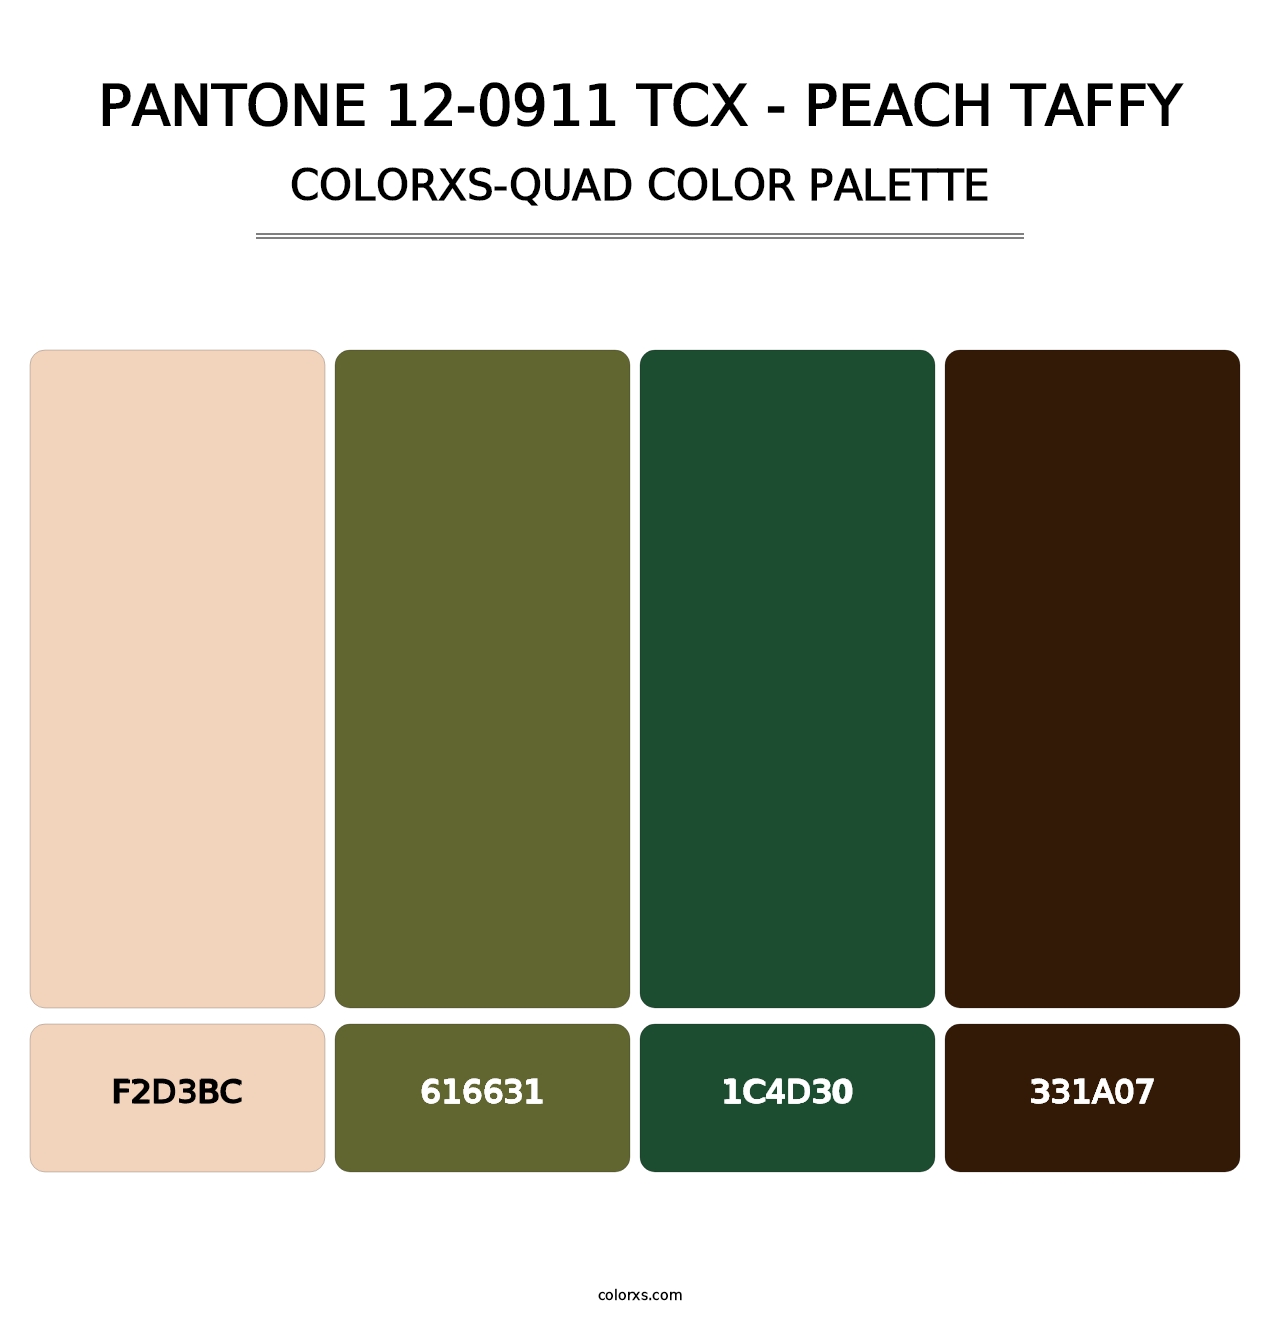 PANTONE 12-0911 TCX - Peach Taffy - Colorxs Quad Palette